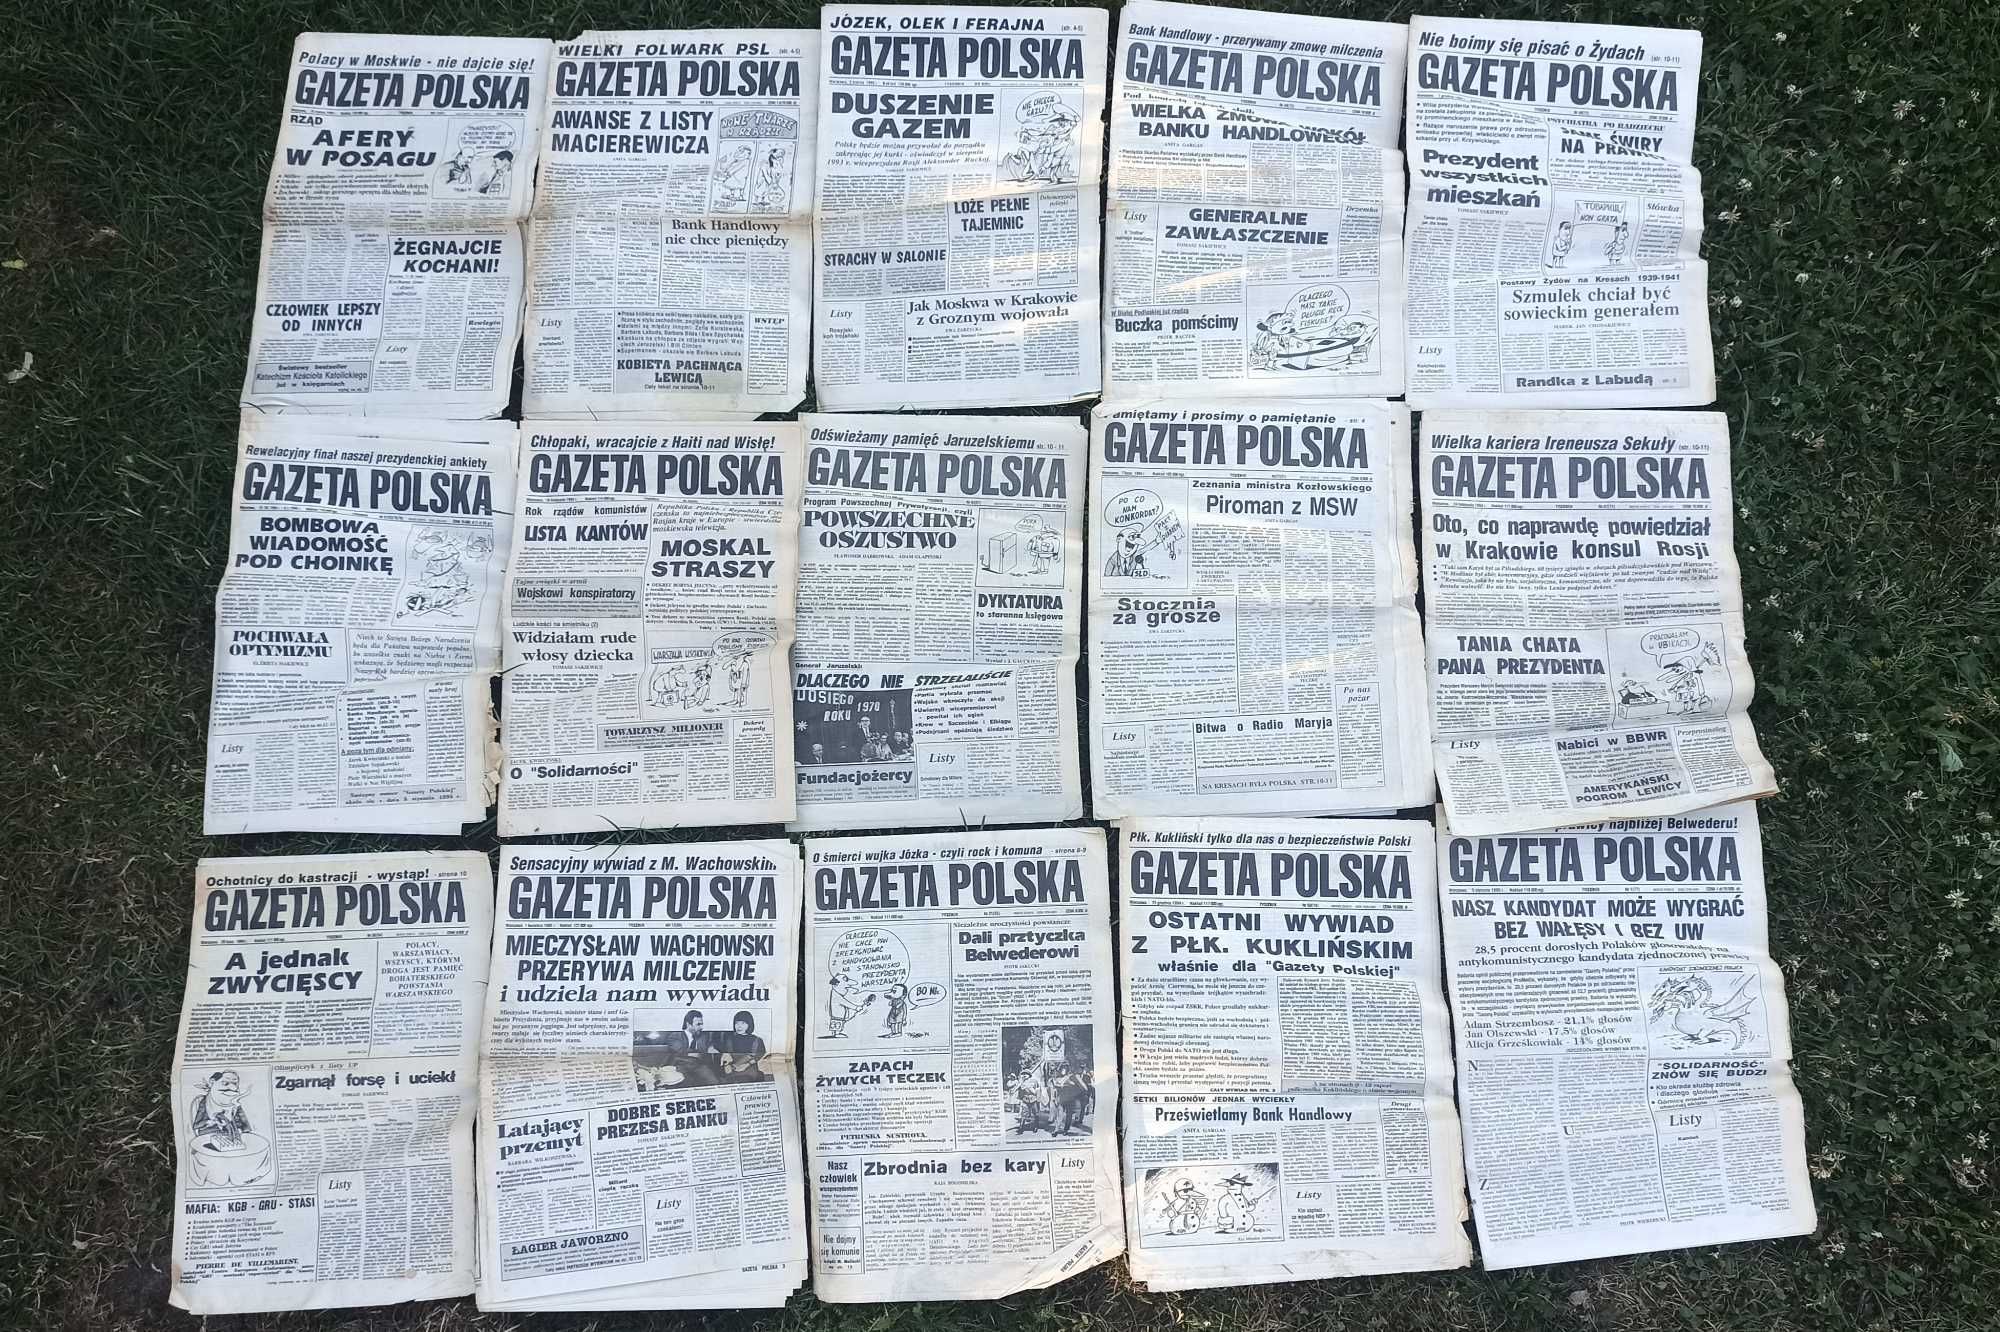 Stare gazety/tygodniki: "Gazeta Polska", "Kulisy", "Głos Nauczycielski